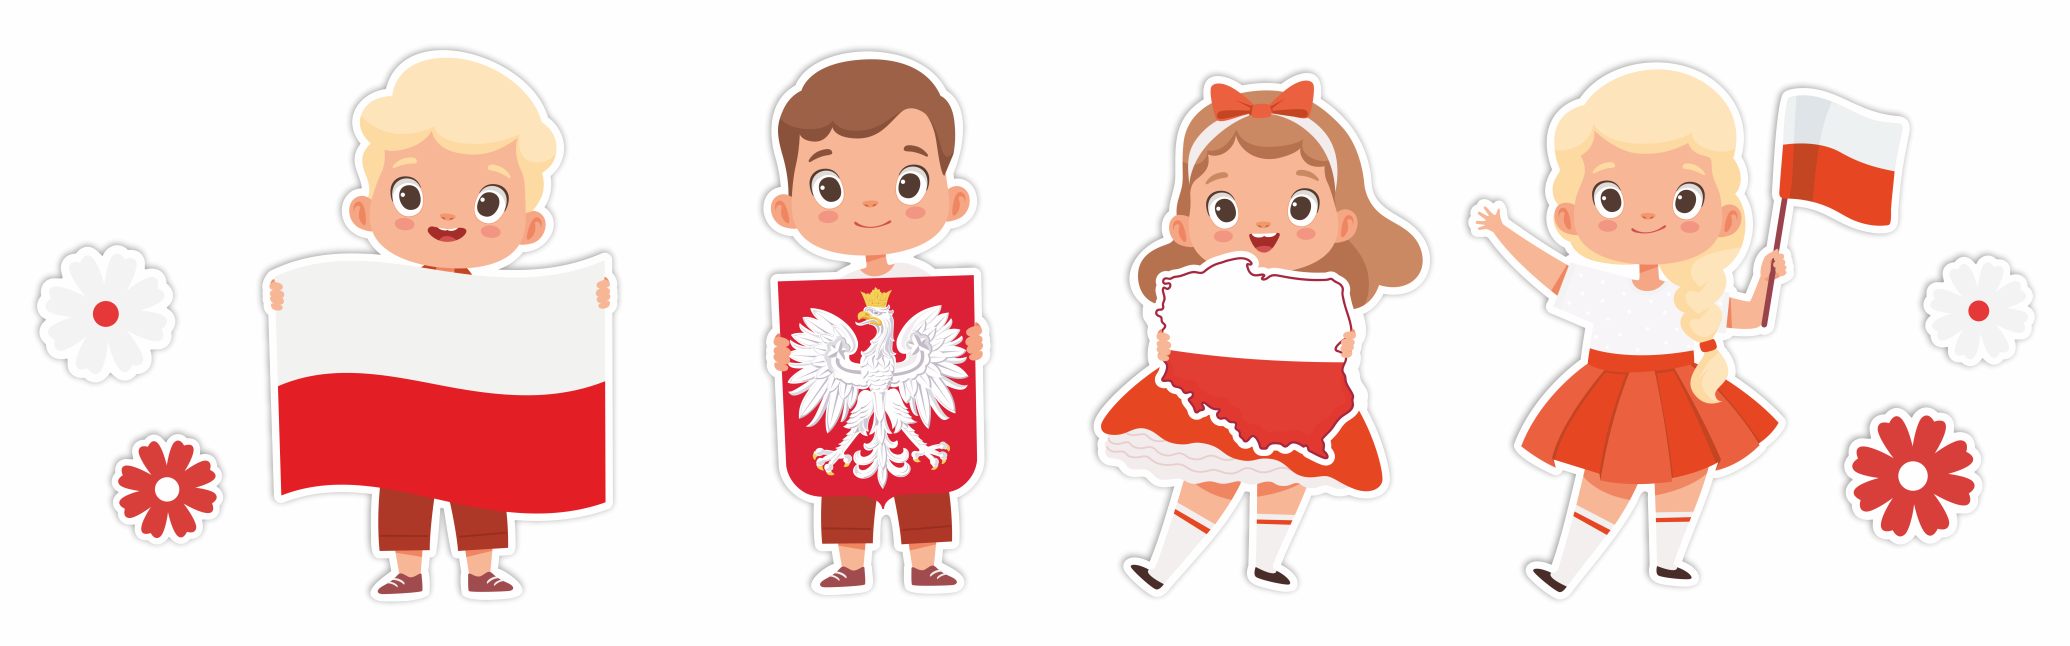 Dekoracja konstytucja 3 maja święta państwowe święta patriotyczne dzieci z flagą Polski